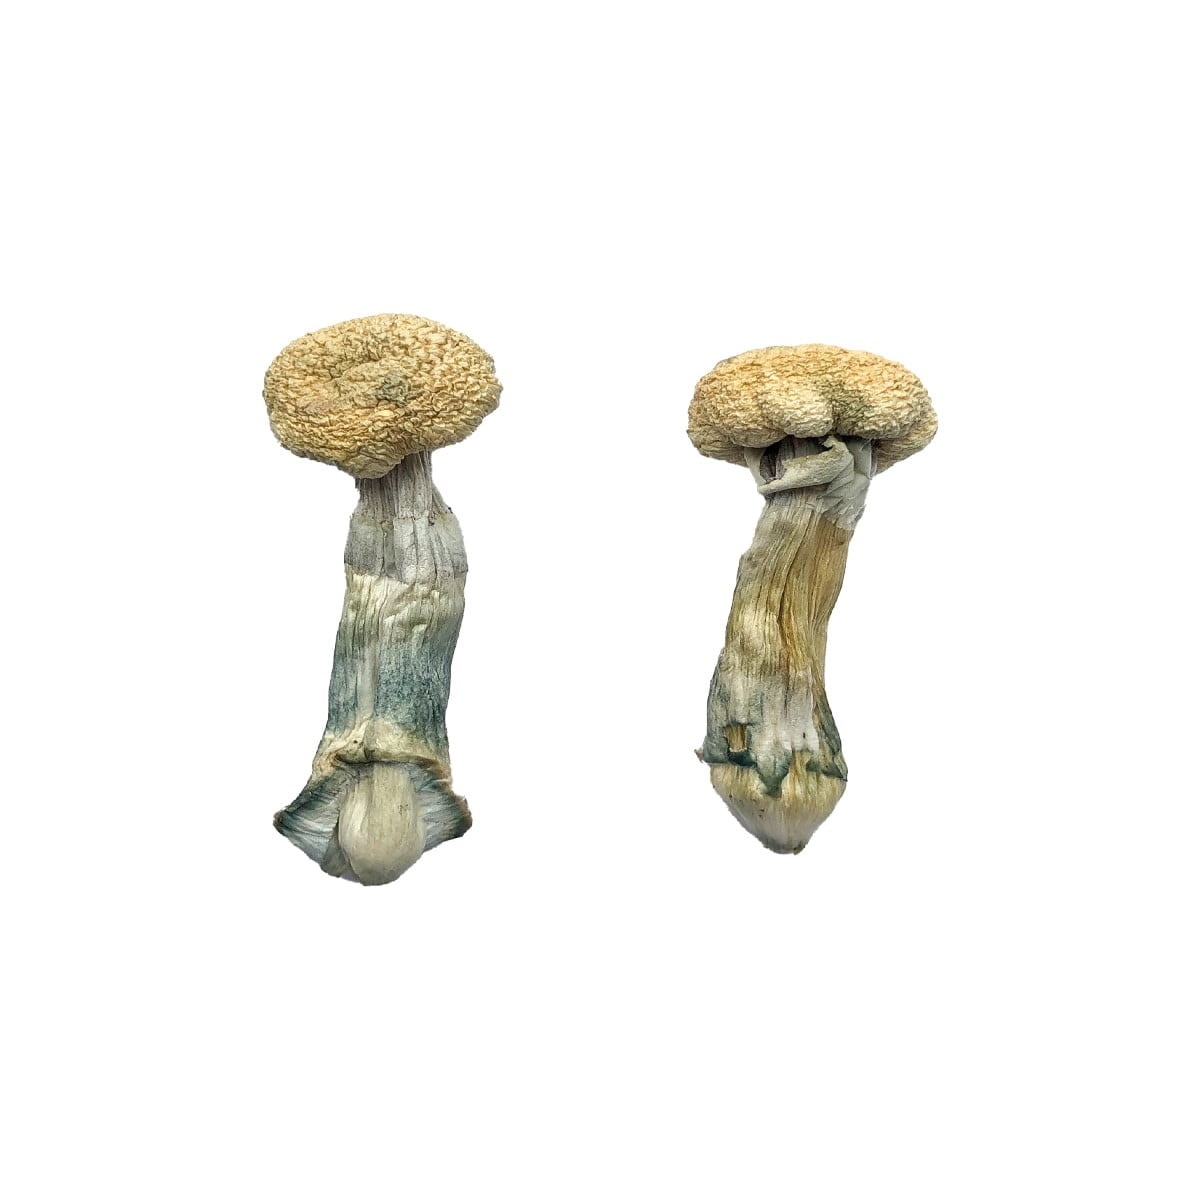 Buy Treasure Coast Mushroom Online Phoenix